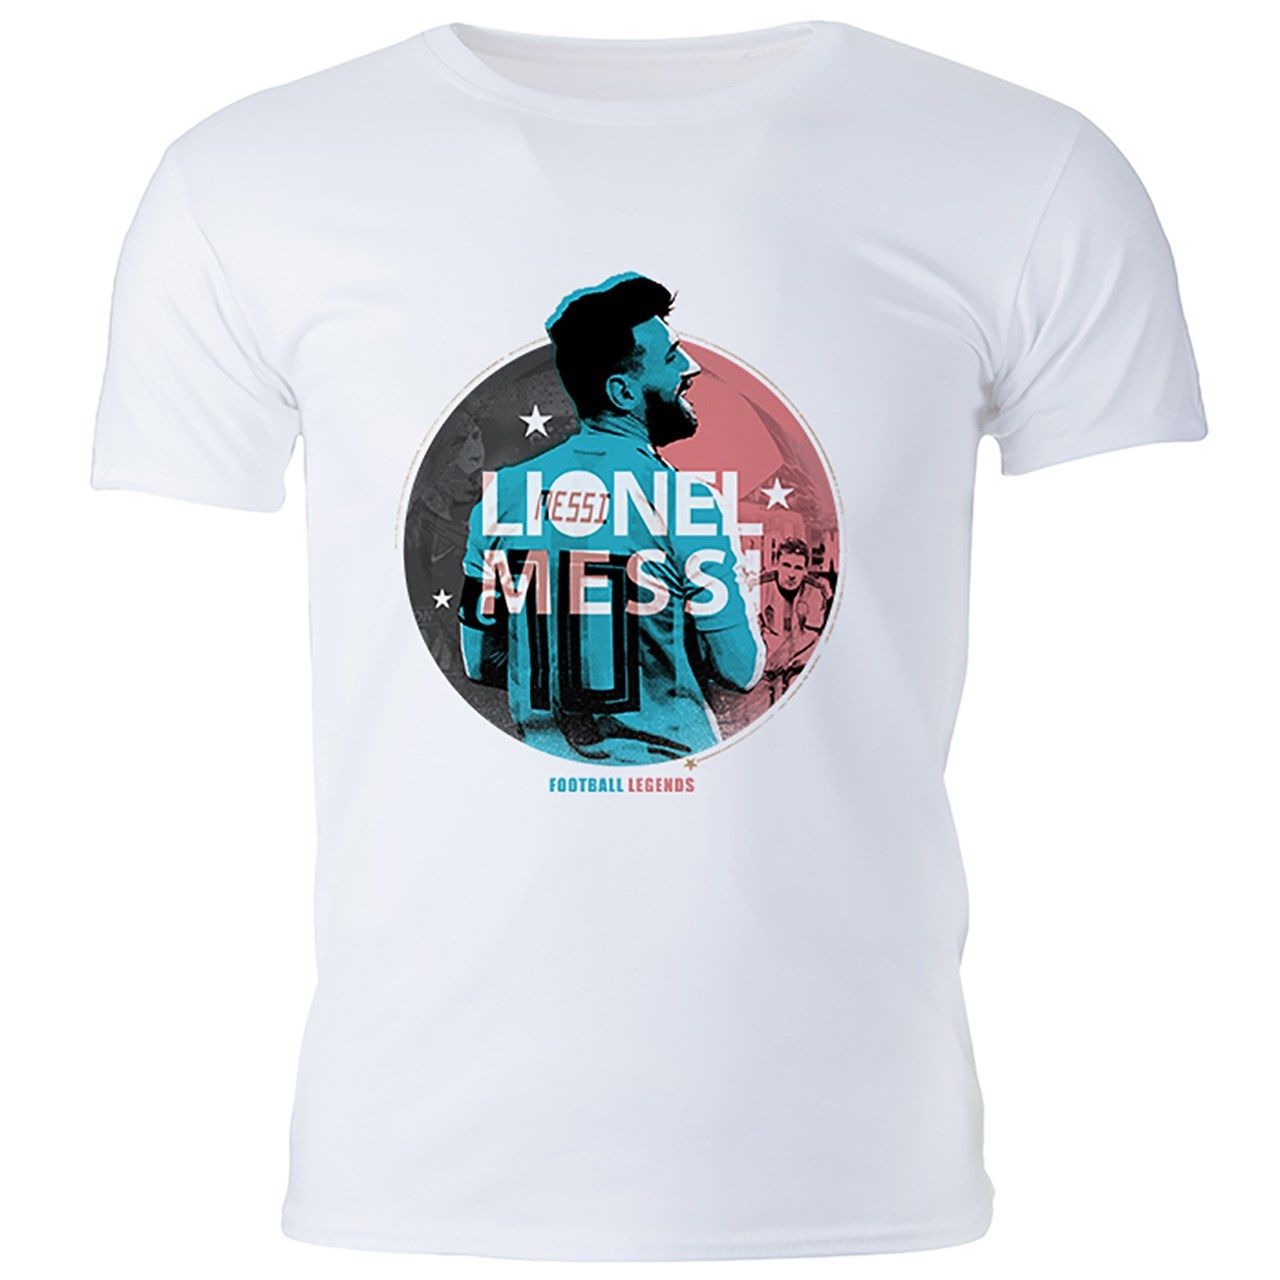 تی شرت مردانه گالری واو طرح لیونل مسی کد CT10012 -  - 1